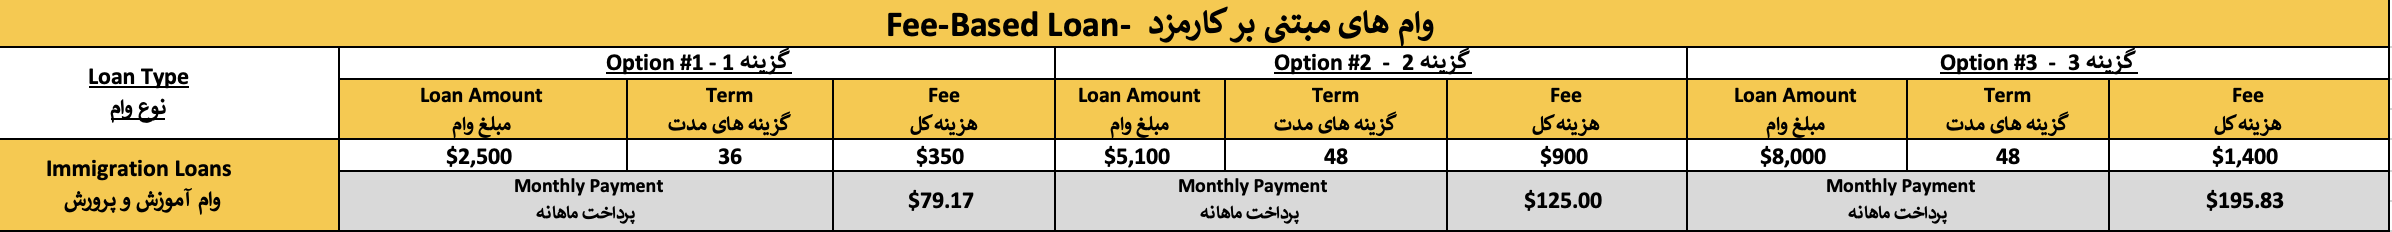 Fee-based_Loan_Immigration_Dari.png